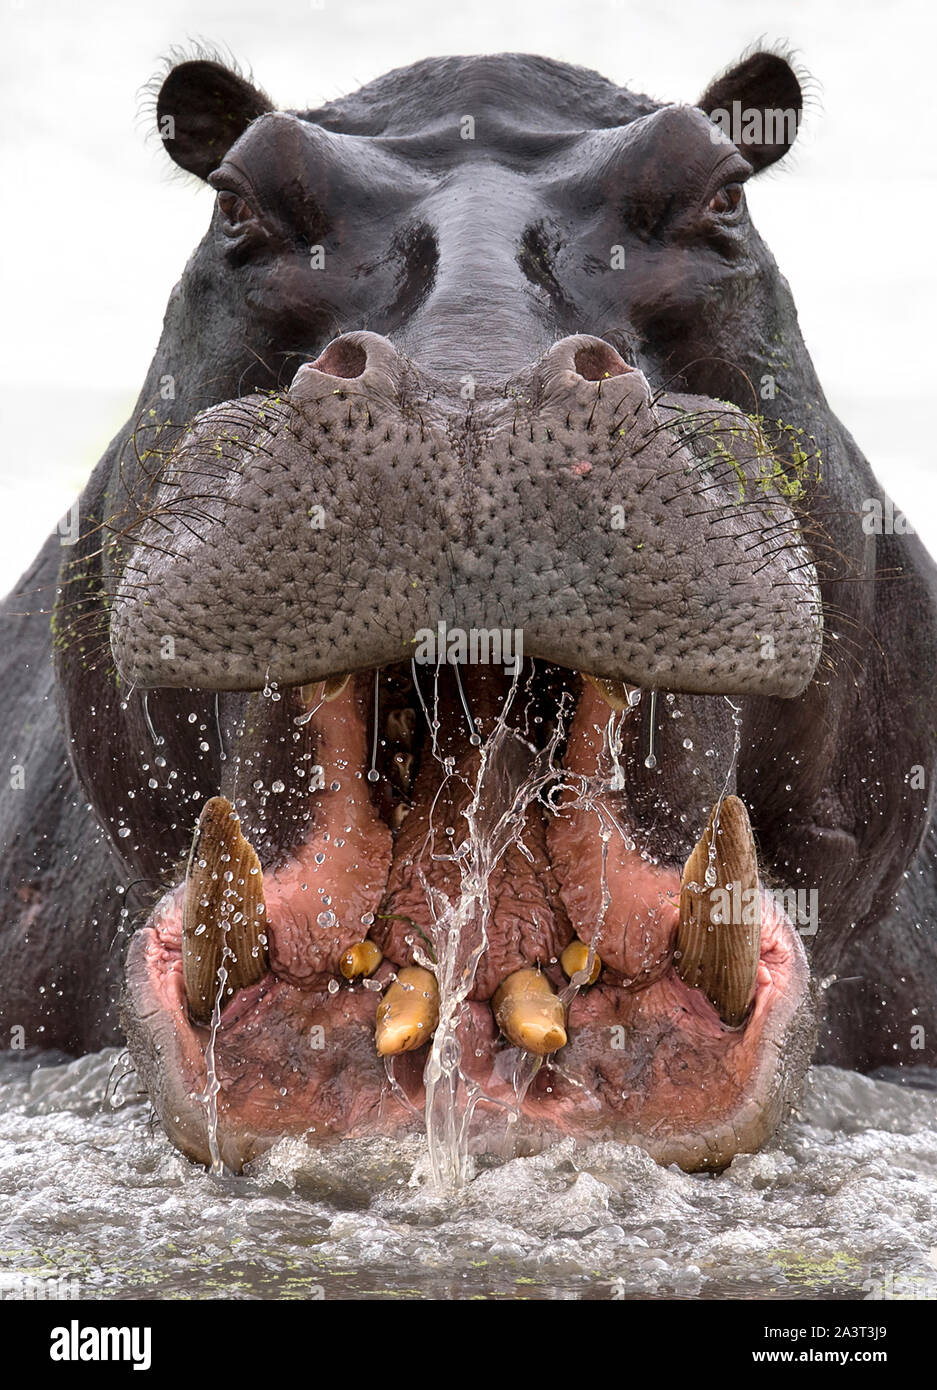 BOTSWANA: ein wütender Mann Rhino brüllt in dieser fantastische Aufnahme von naturfotograf Dale Morris. Ein britischer Fotograf riß eine atemberaubende Stockfoto